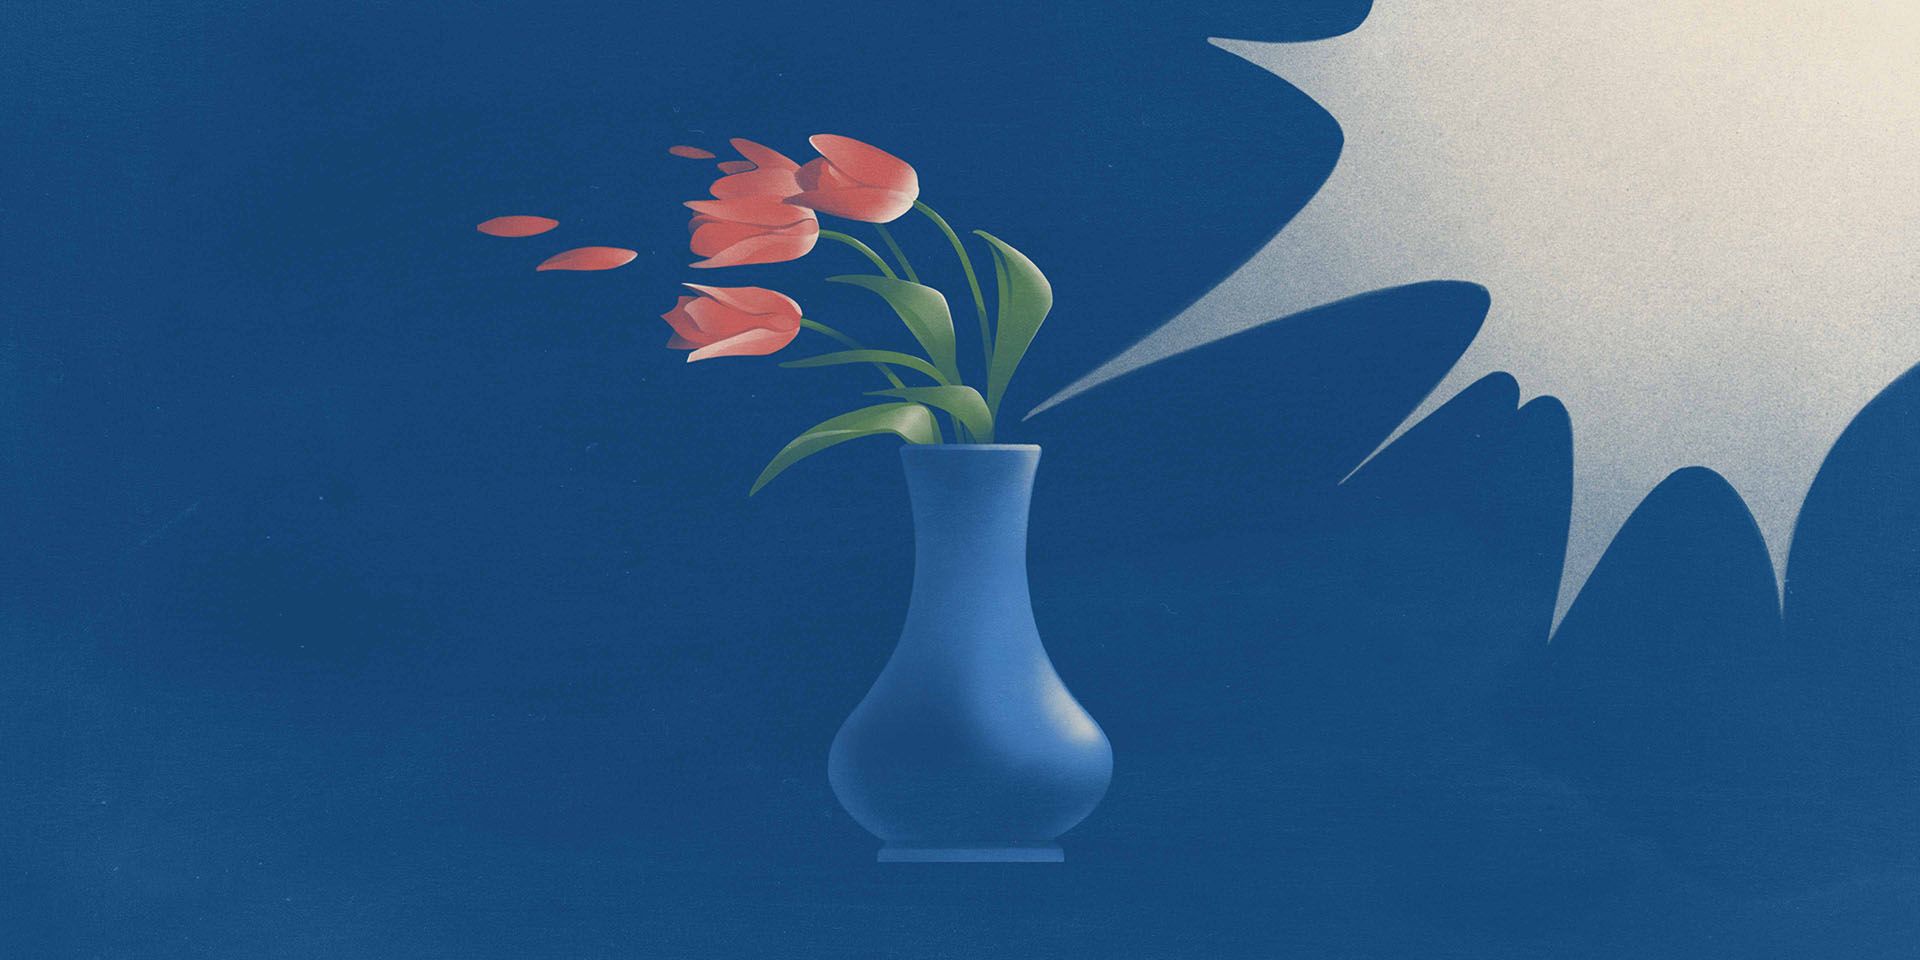 Pour symboliser la violence à l’égard des femmes, un souffle violent projette sur le côté destulipes dans un vase.